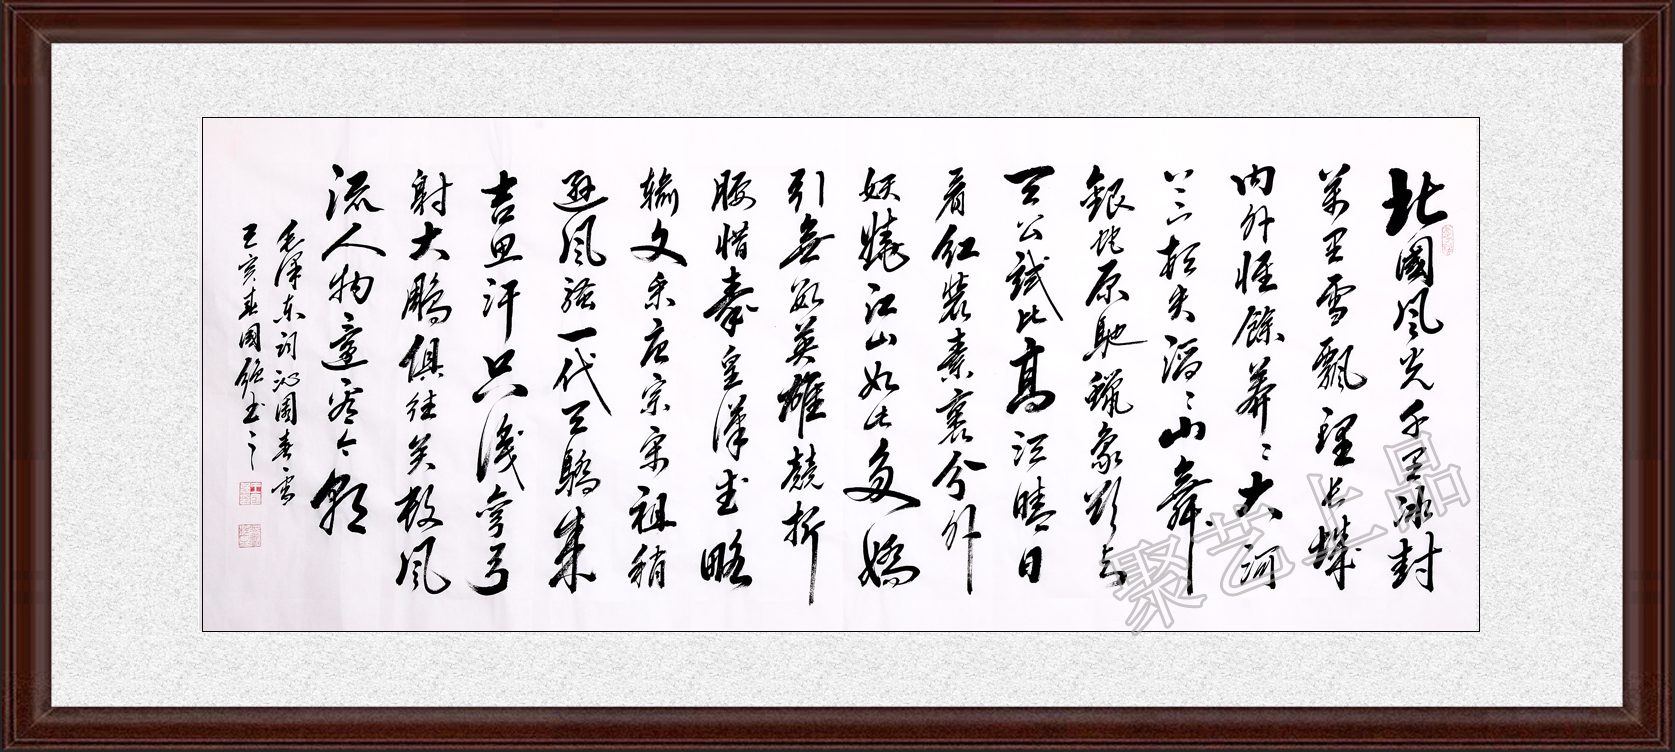 三, 书法作品宏扬中国传统文化王国强行书书法作品《厚德载物》笔随意